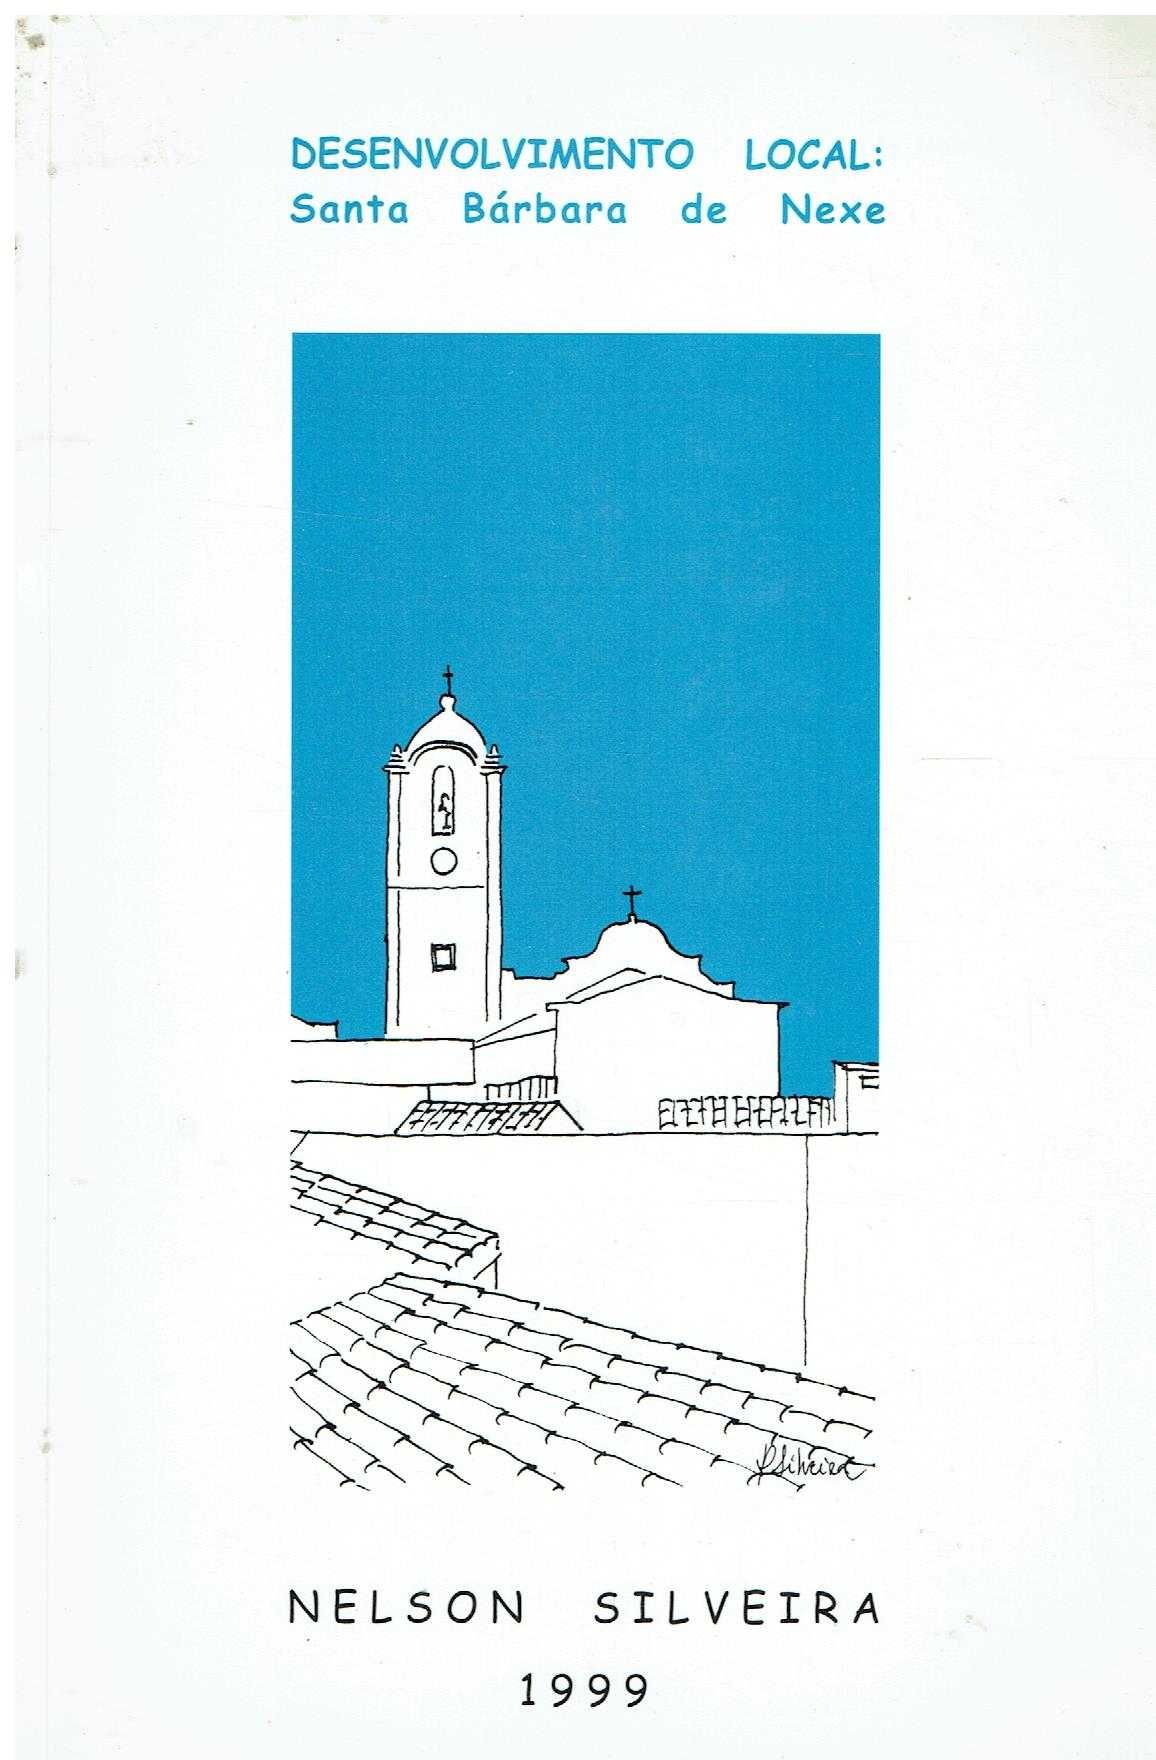 10619 - Livros sobre a região de Faro / 2